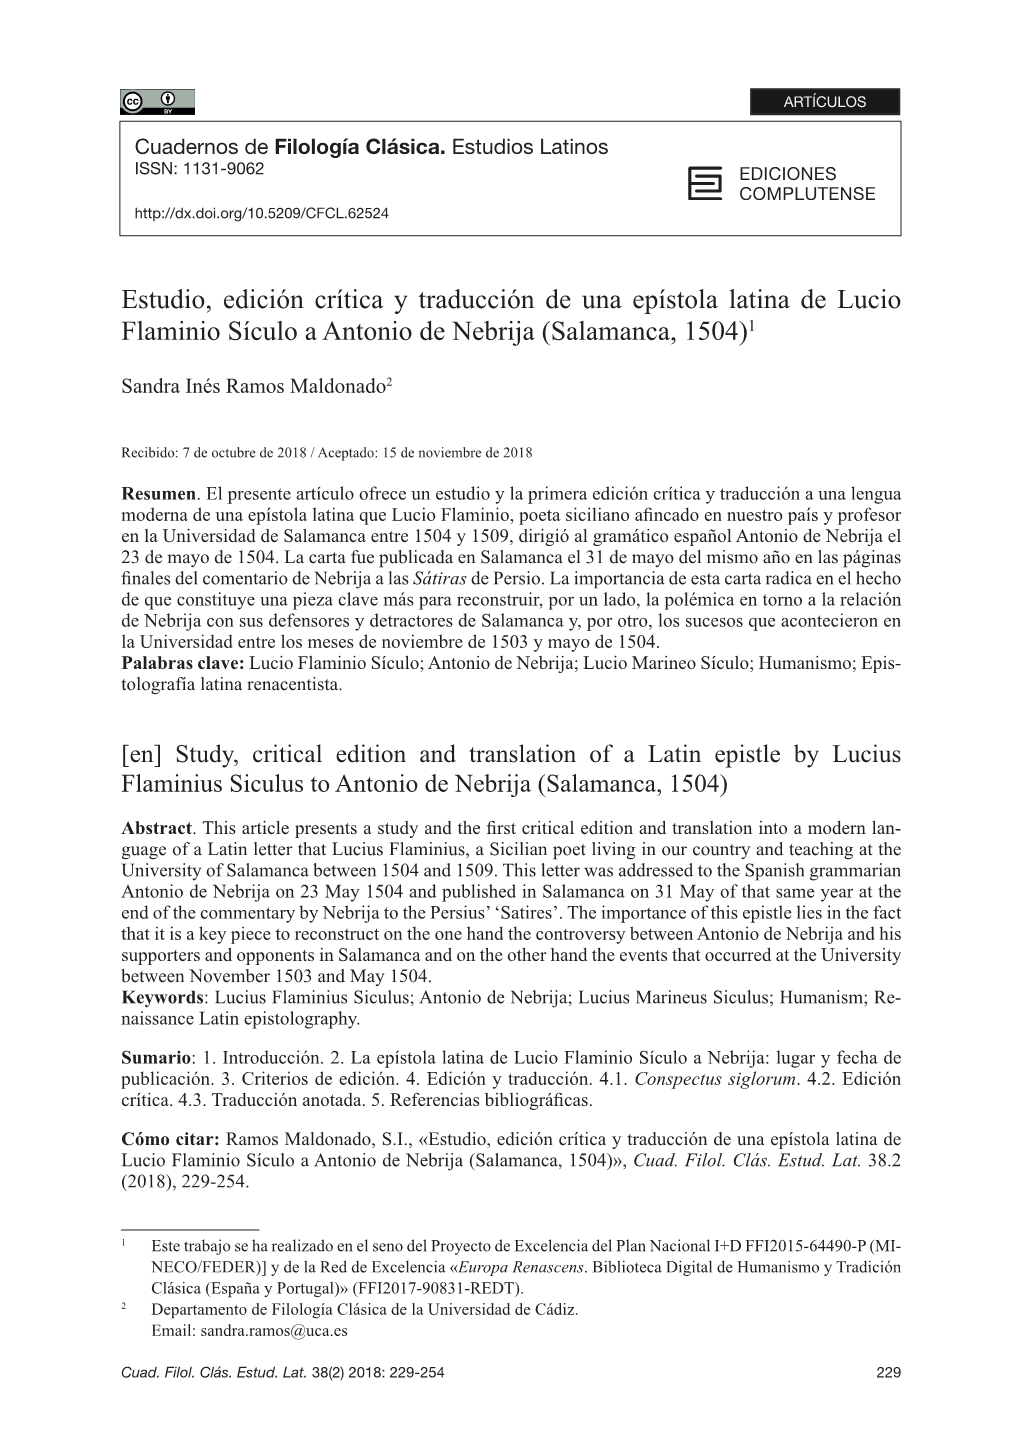 Estudio, Edición Crítica Y Traducción De Una Epístola Latina De Lucio Flaminio Sículo a Antonio De Nebrija (Salamanca, 1504)1